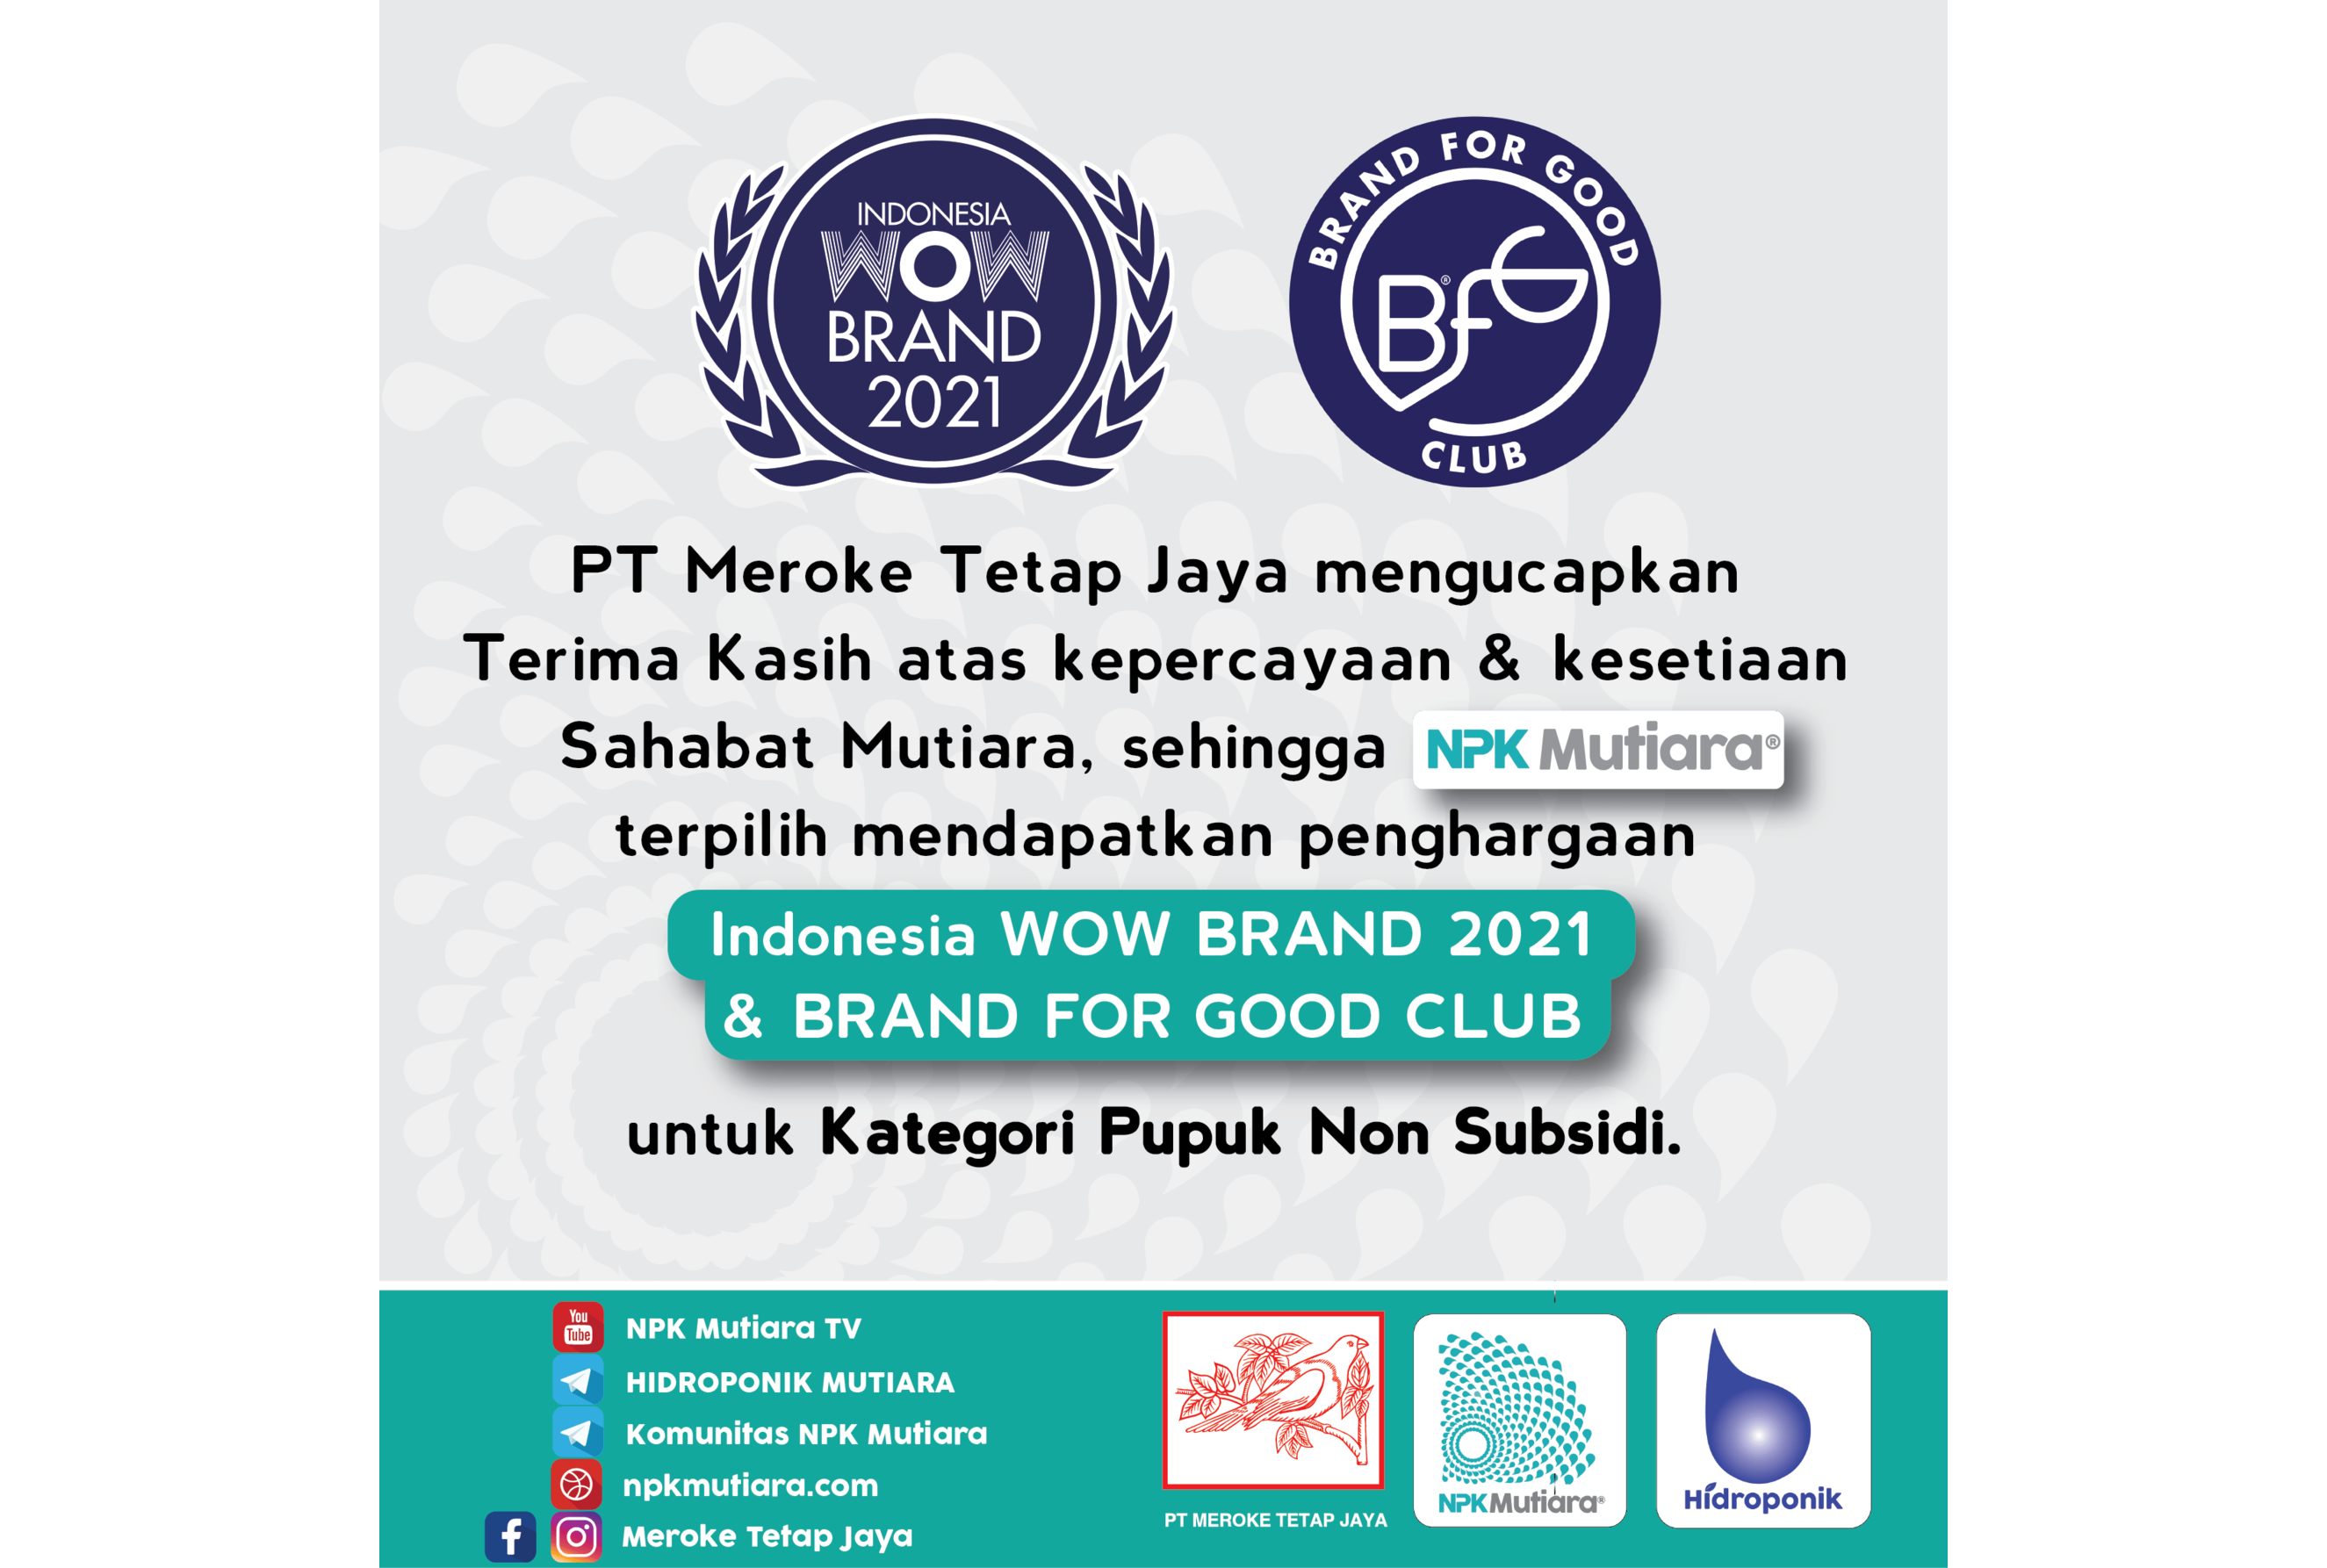 NPK Mutiara Raih Penghargaan Indonesia WOW Brand 2021